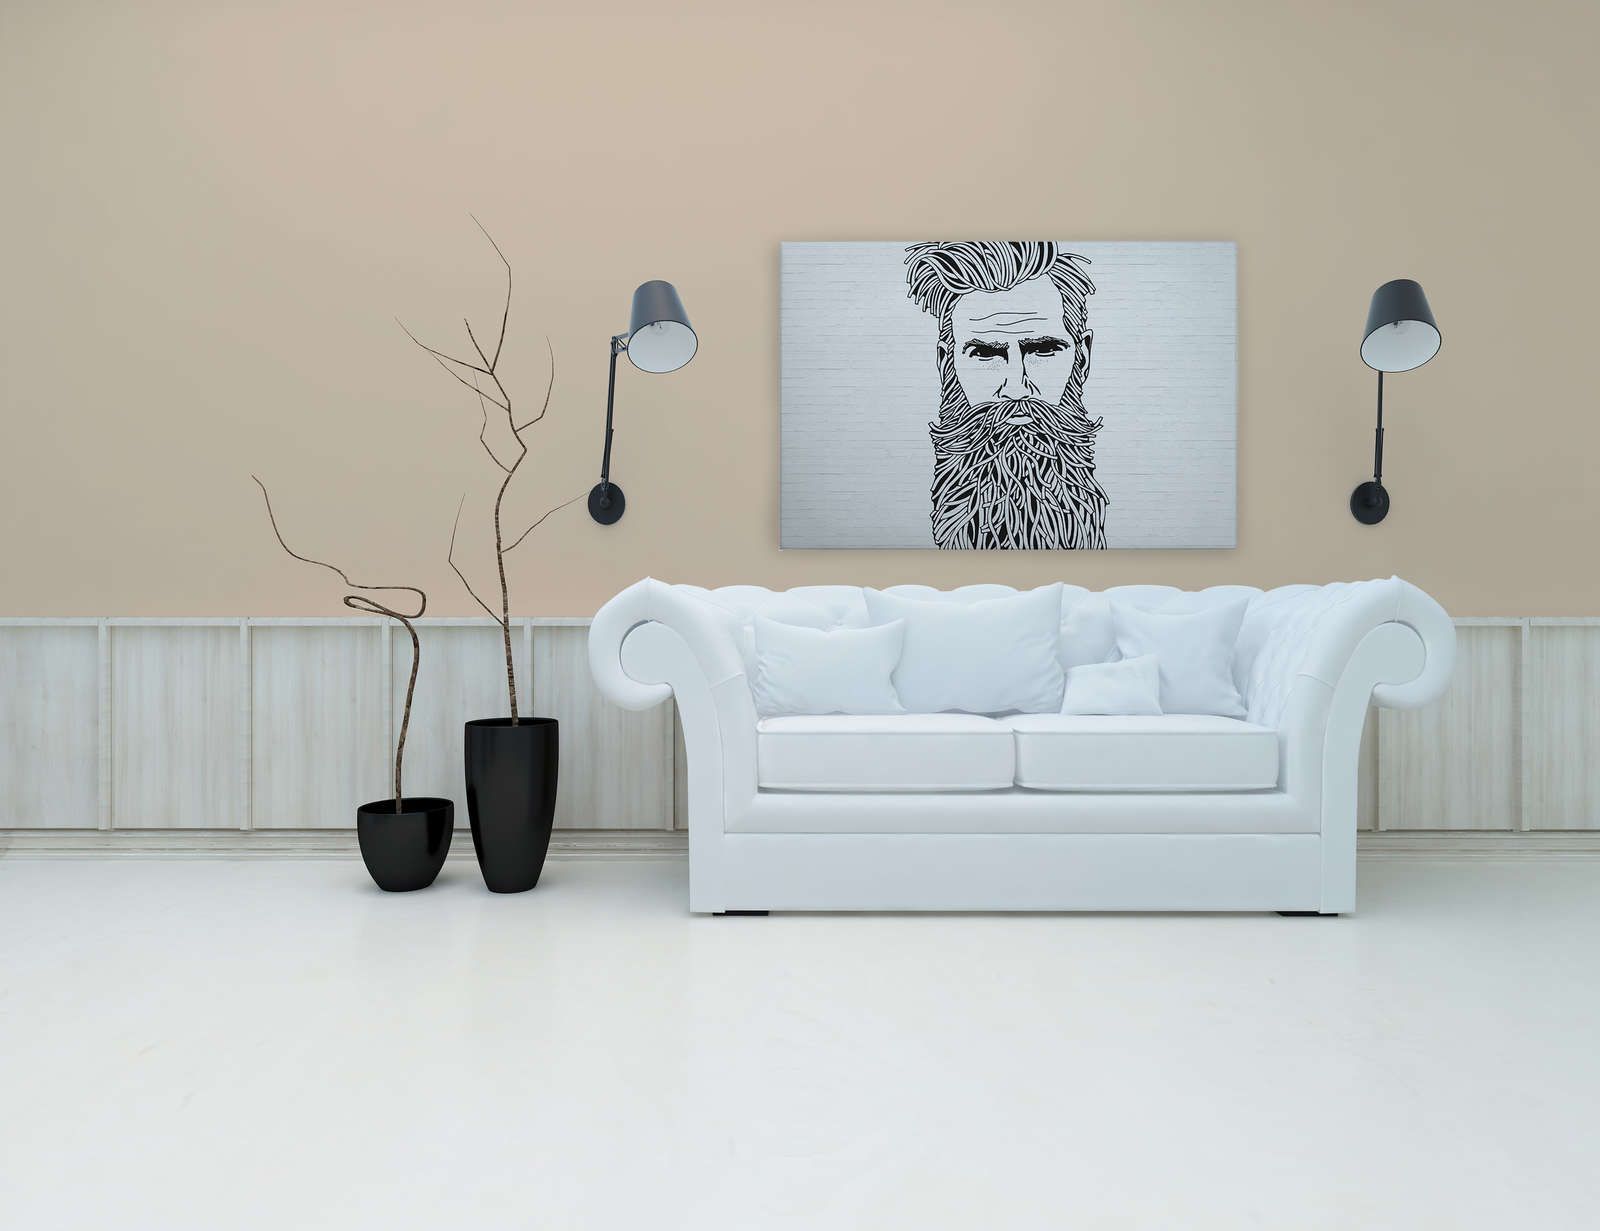             Weißes Leinwandbild Steinoptik mit Männer Portrait im Zeichenstil – 1,20 m x 0,80 m
        